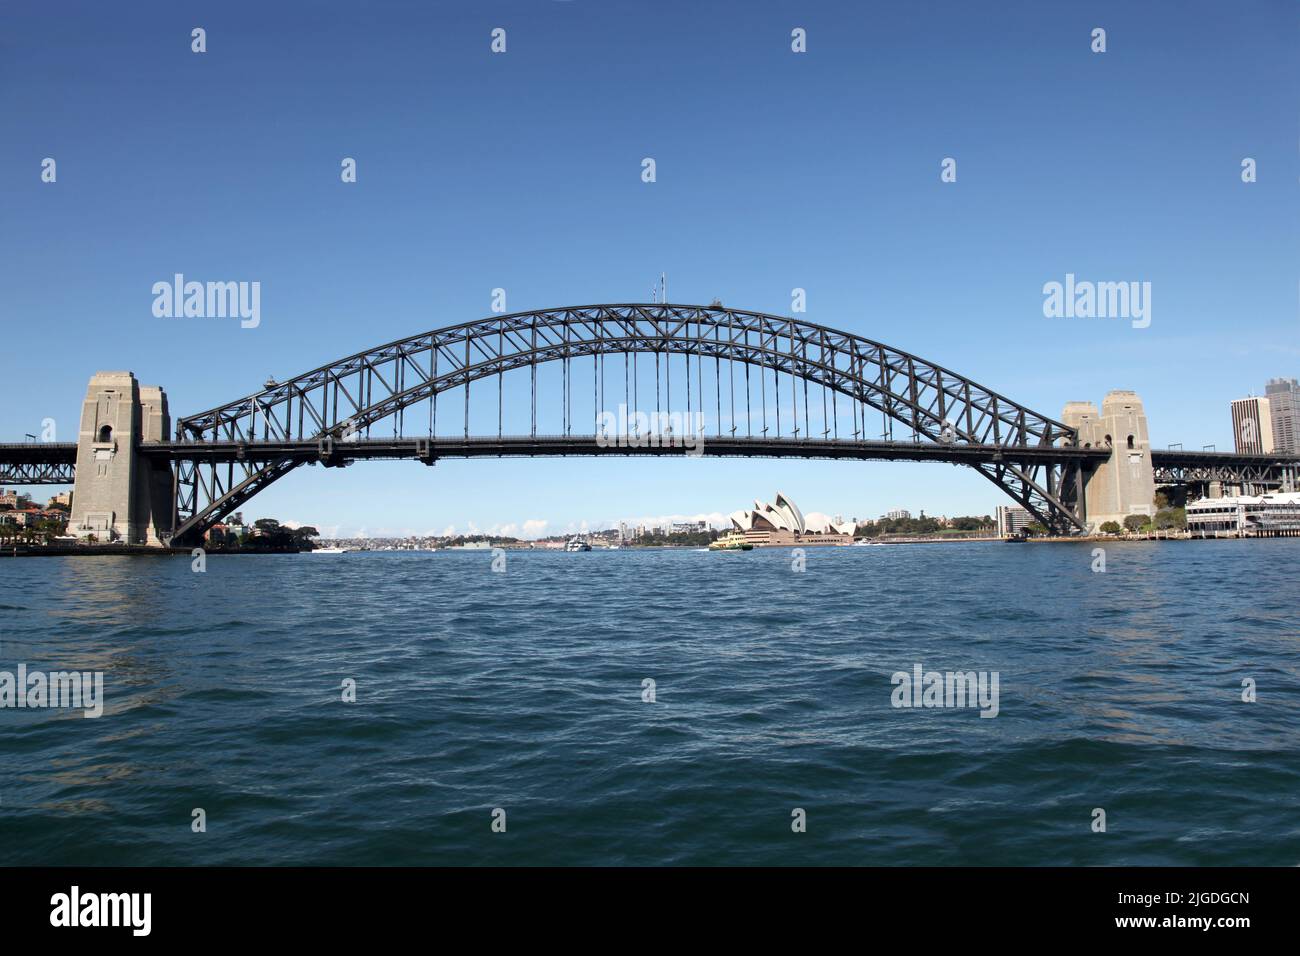 Sydney Harbour Bridge - Sydney Australia Stock Photo